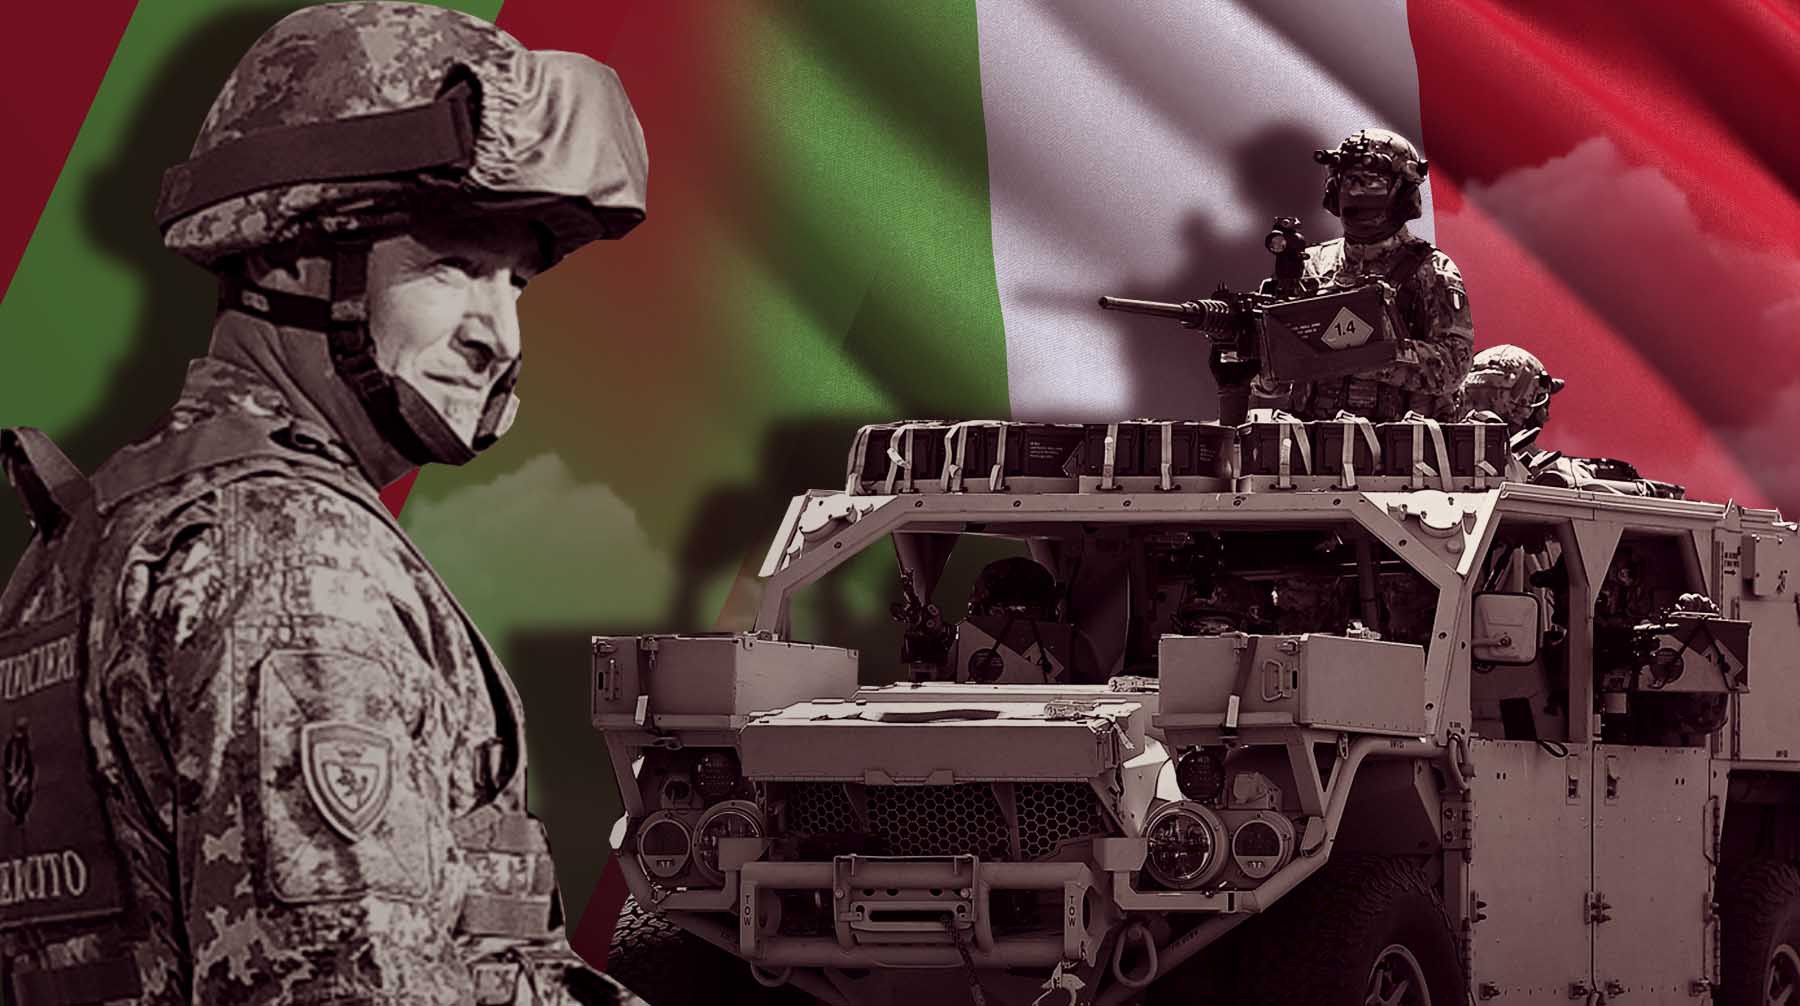 Dailystorm - Армия Италии перешла в режим повышенной готовности, солдатам не рекомендовали уходить в отпуска